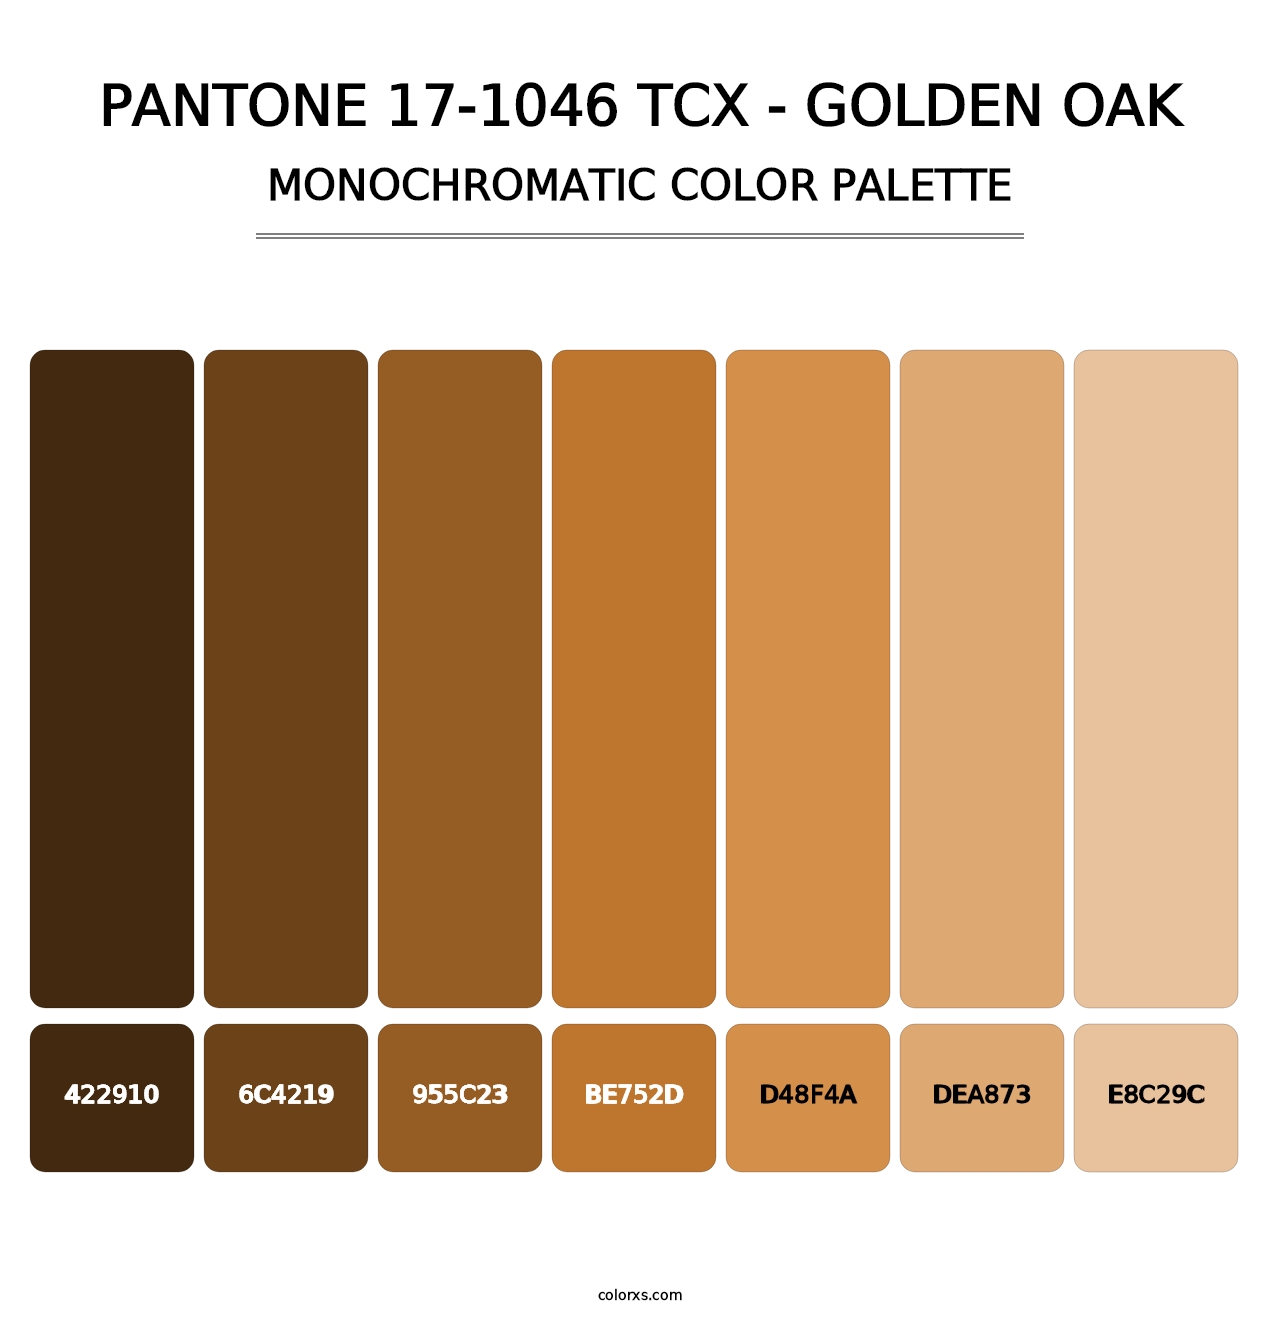 PANTONE 17-1046 TCX - Golden Oak - Monochromatic Color Palette